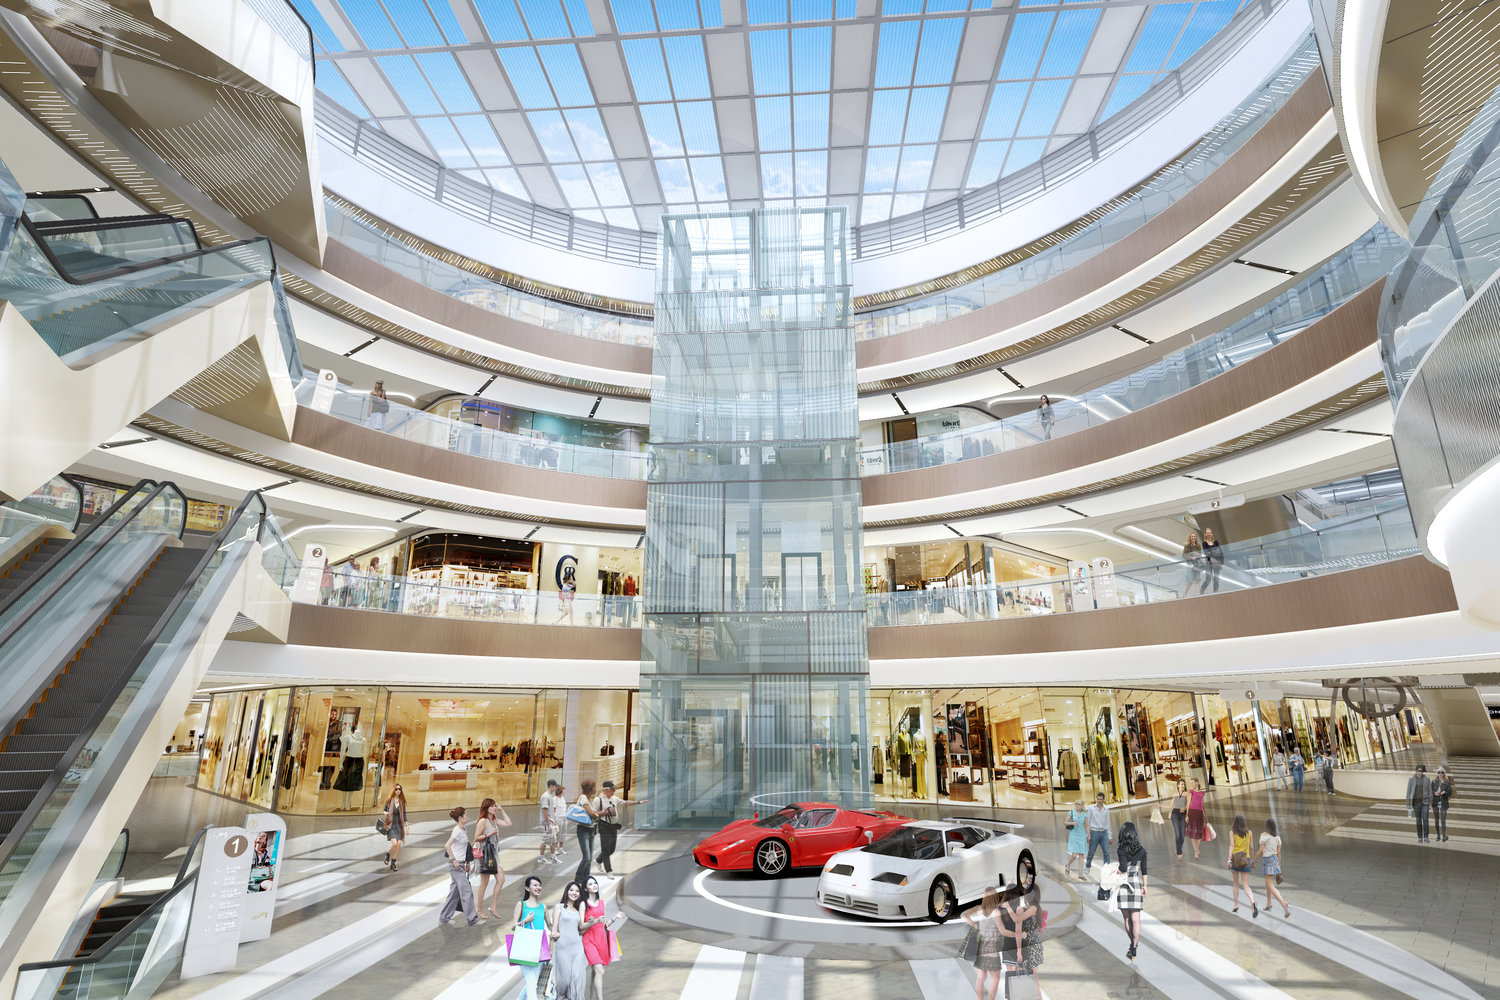 购物中心中庭设计讲究通透性效果图彰显不俗气息